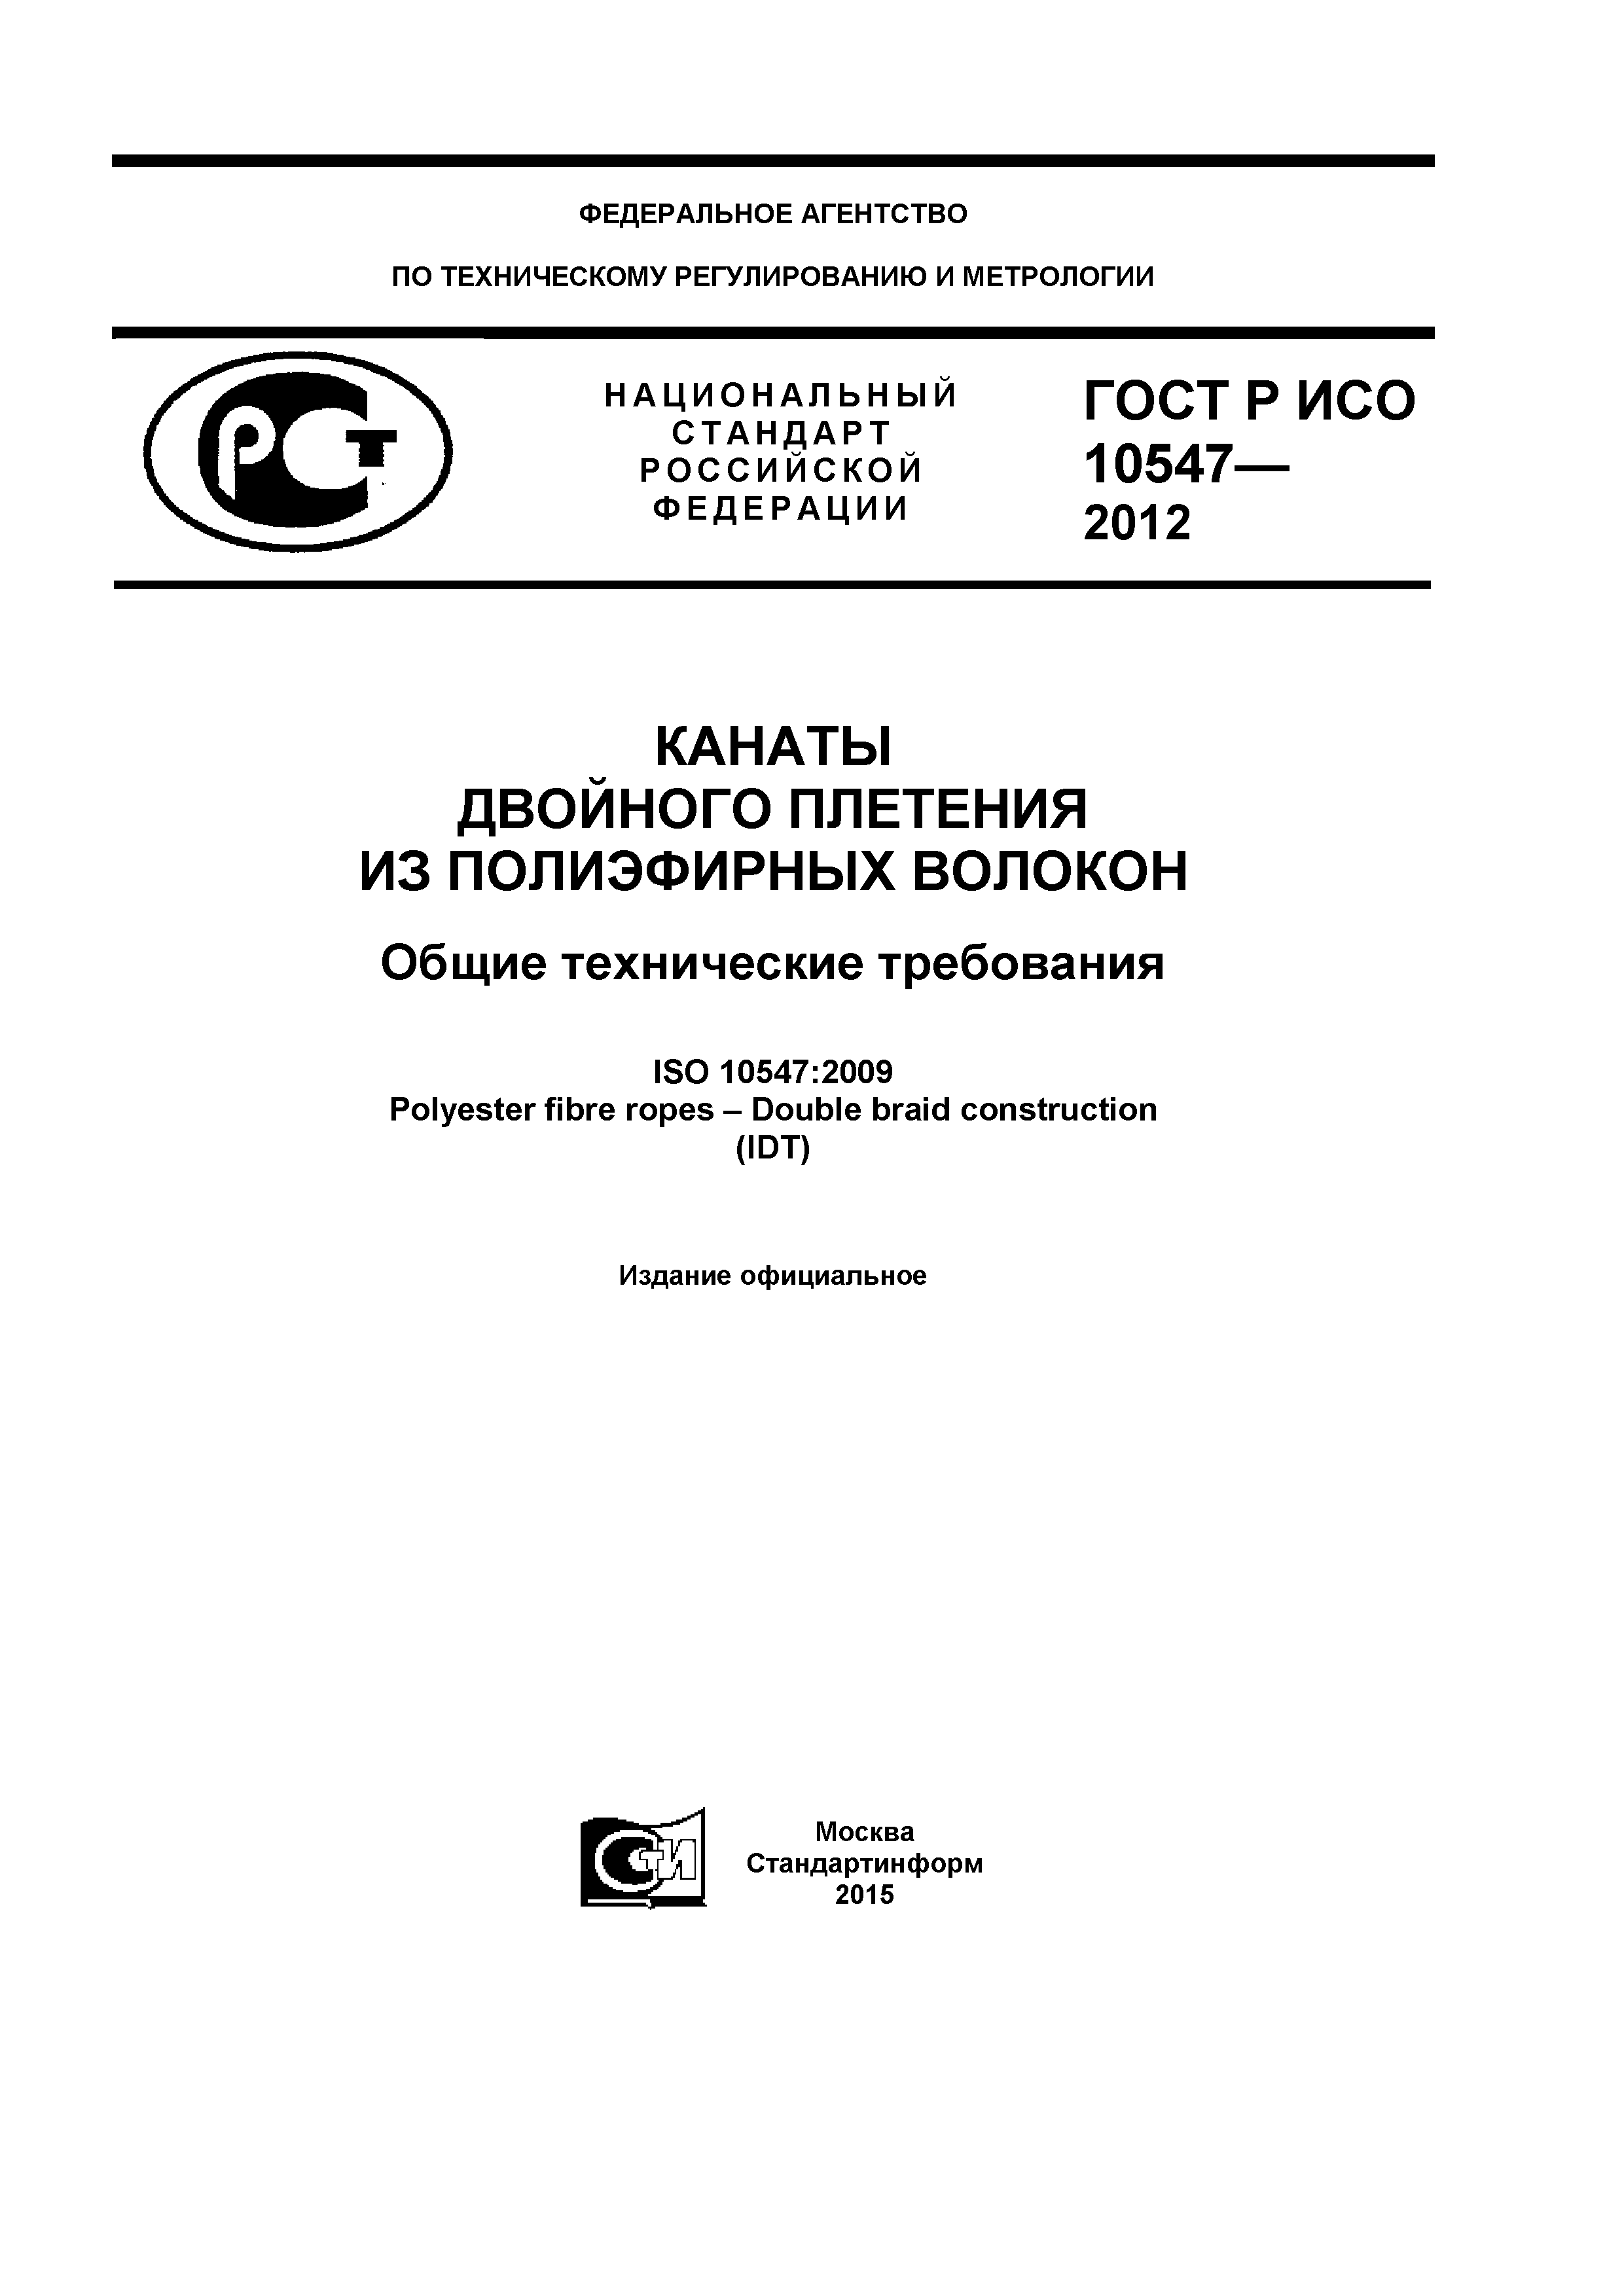 ГОСТ Р ИСО 10547-2012